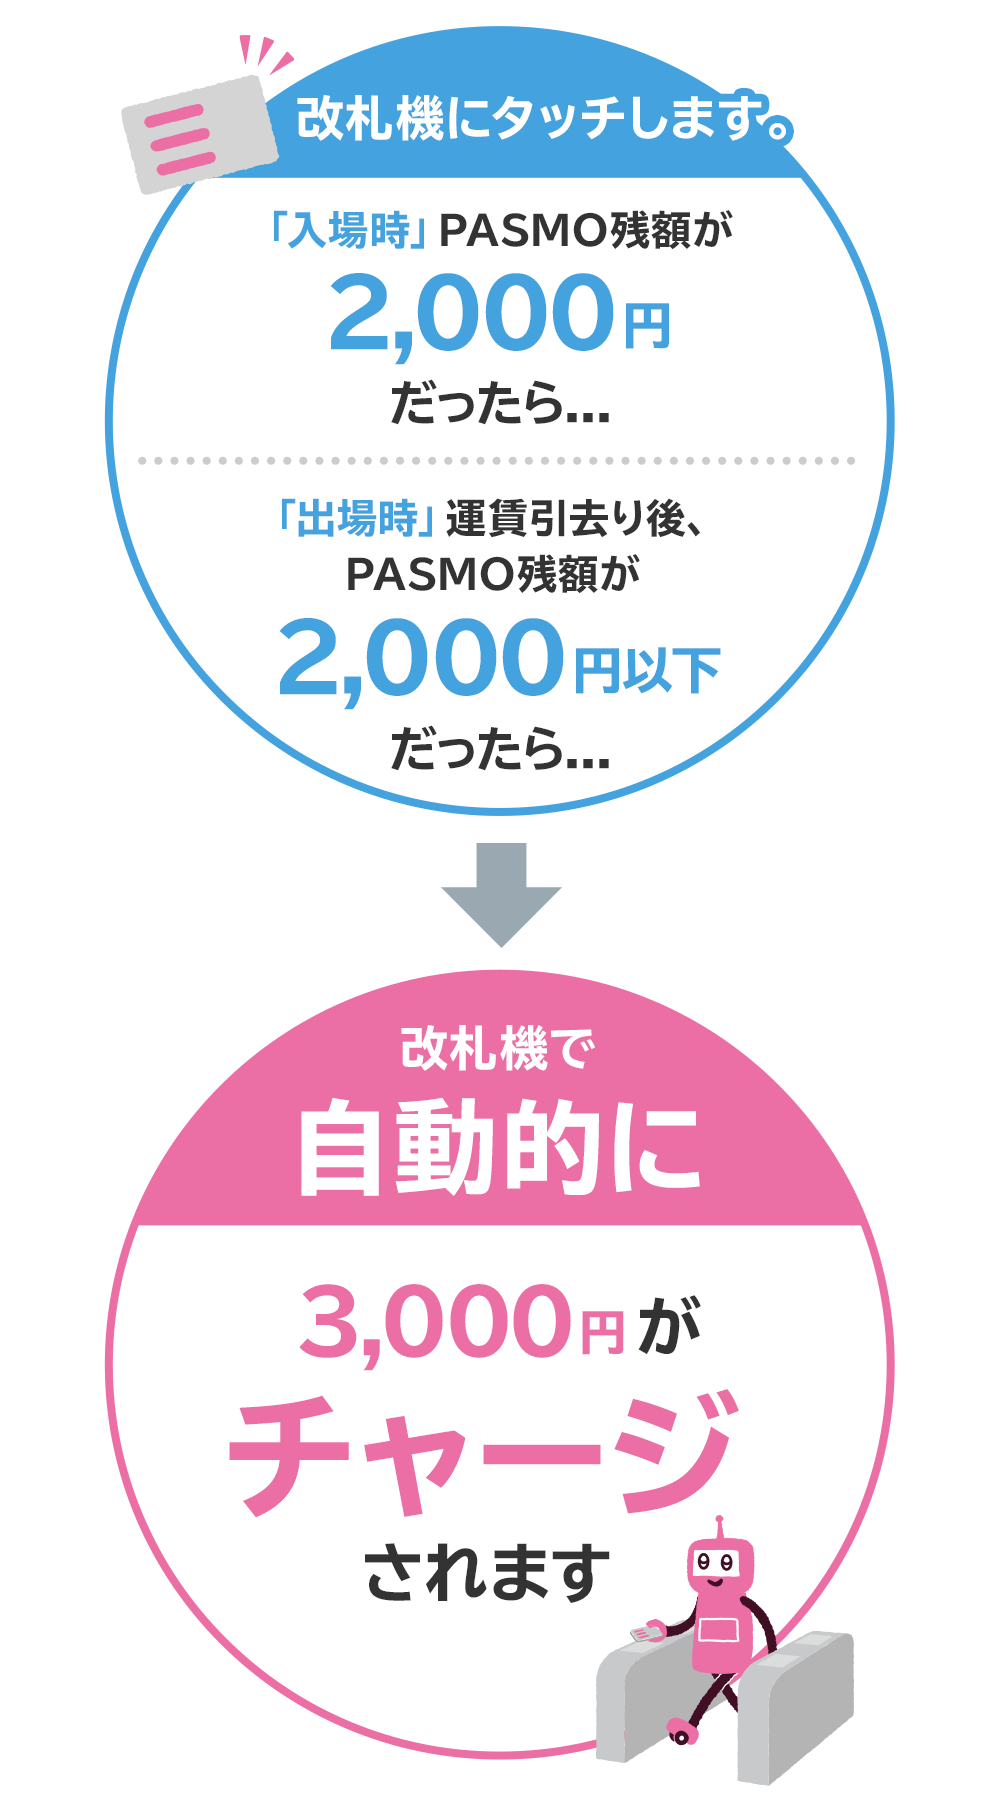 【入場時】PASMO残額が2,000円以下だった場合、【出場時】運賃引去り後のPASMO残額が2,000円以下だった場合、改札機で自動的に3,000円がチャージされます。